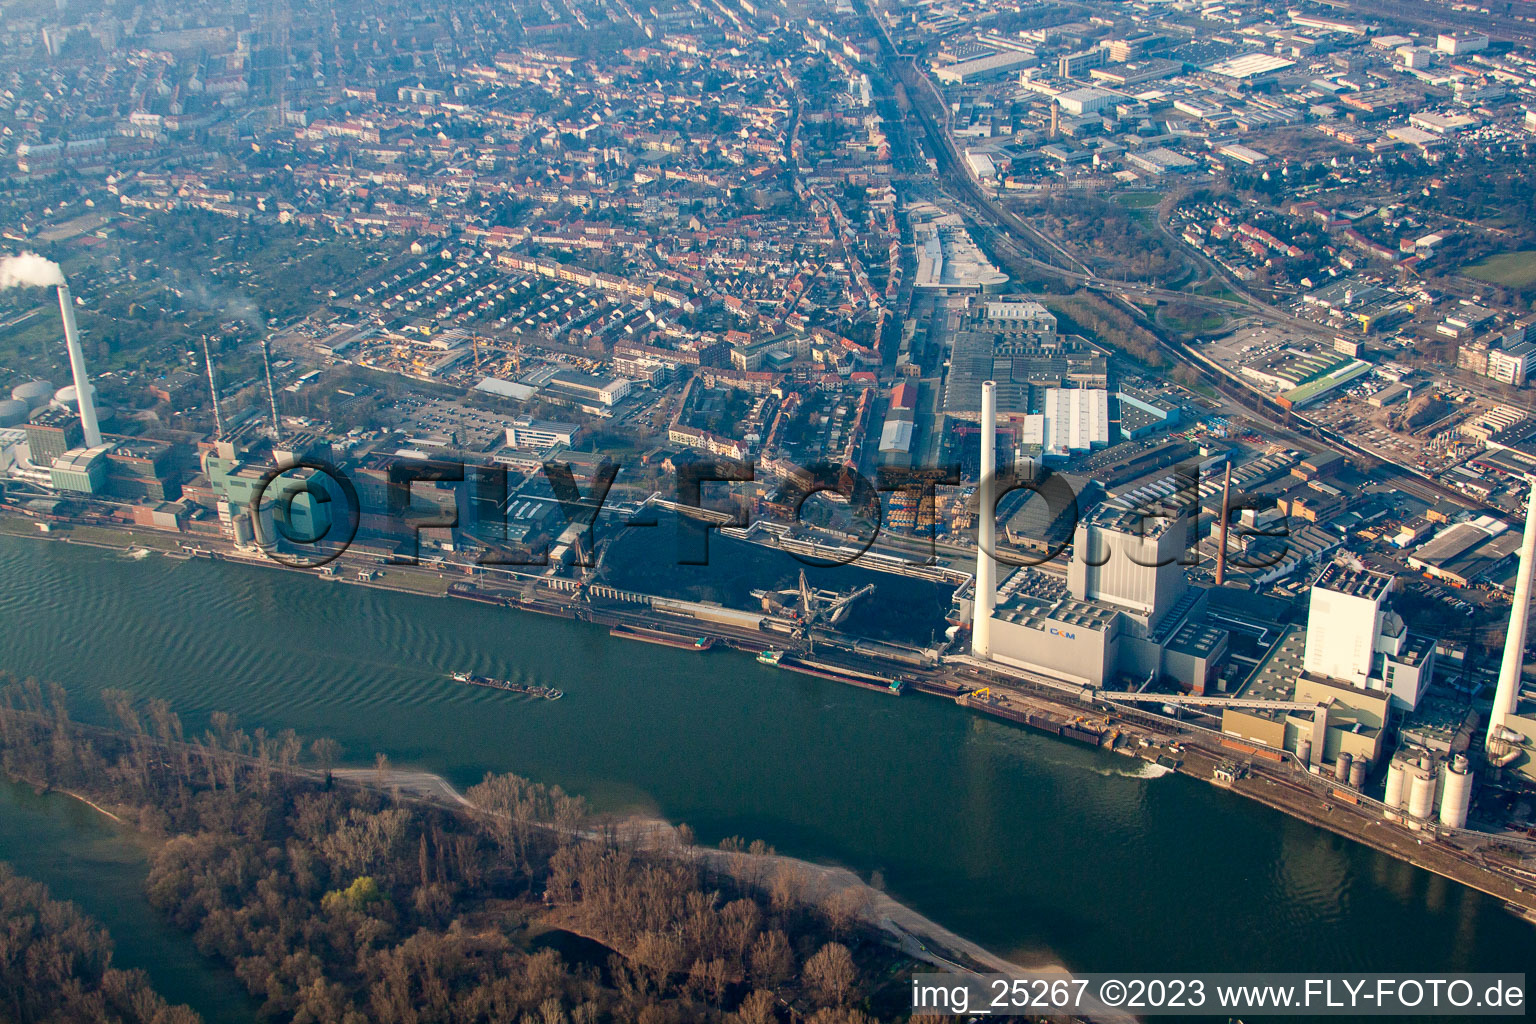 Photographie aérienne de Chantier pour la nouvelle construction de la centrale électrique et des tours d'échappement de la centrale thermique GKM bloc 6 à le quartier Neckarau in Mannheim dans le département Bade-Wurtemberg, Allemagne